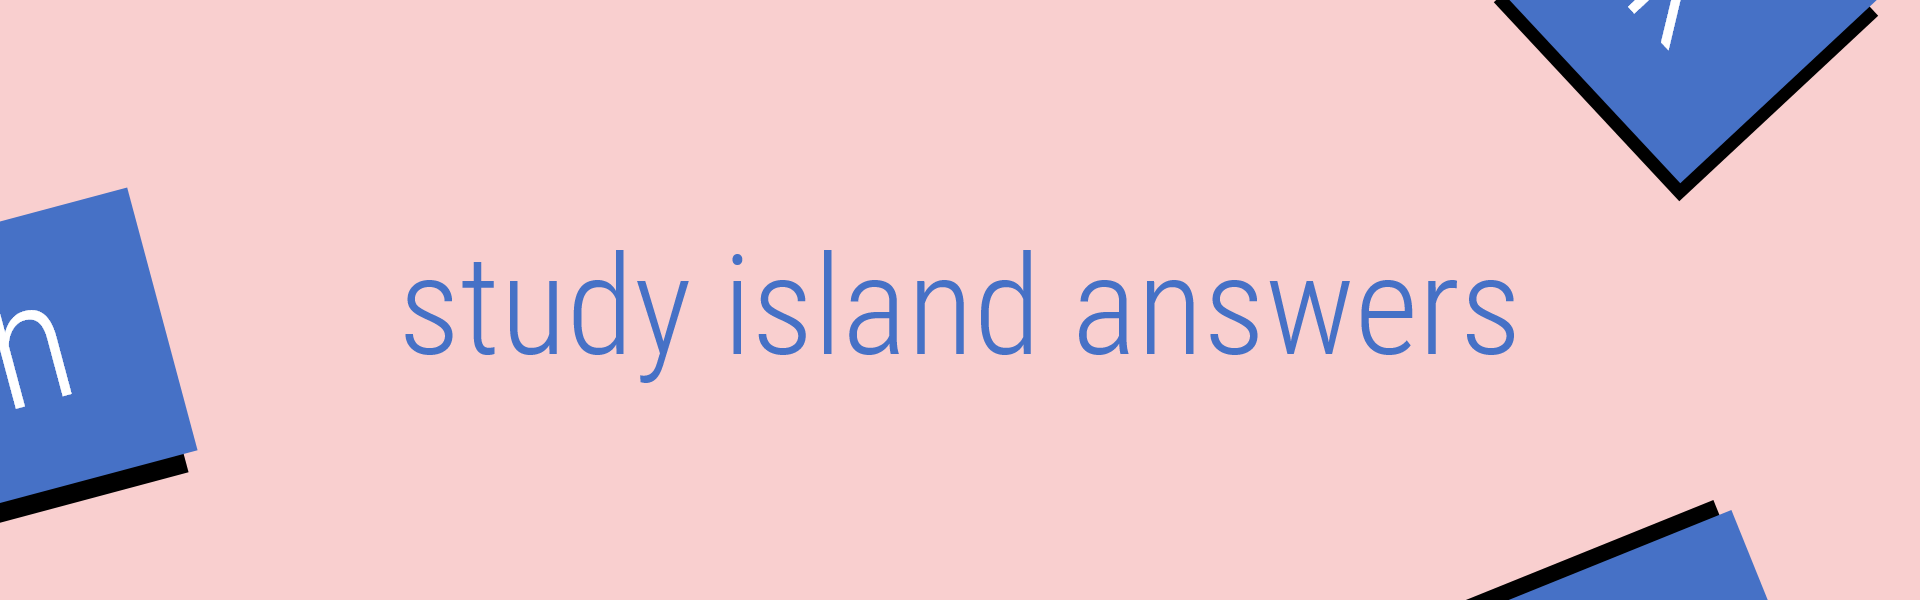 study island answers